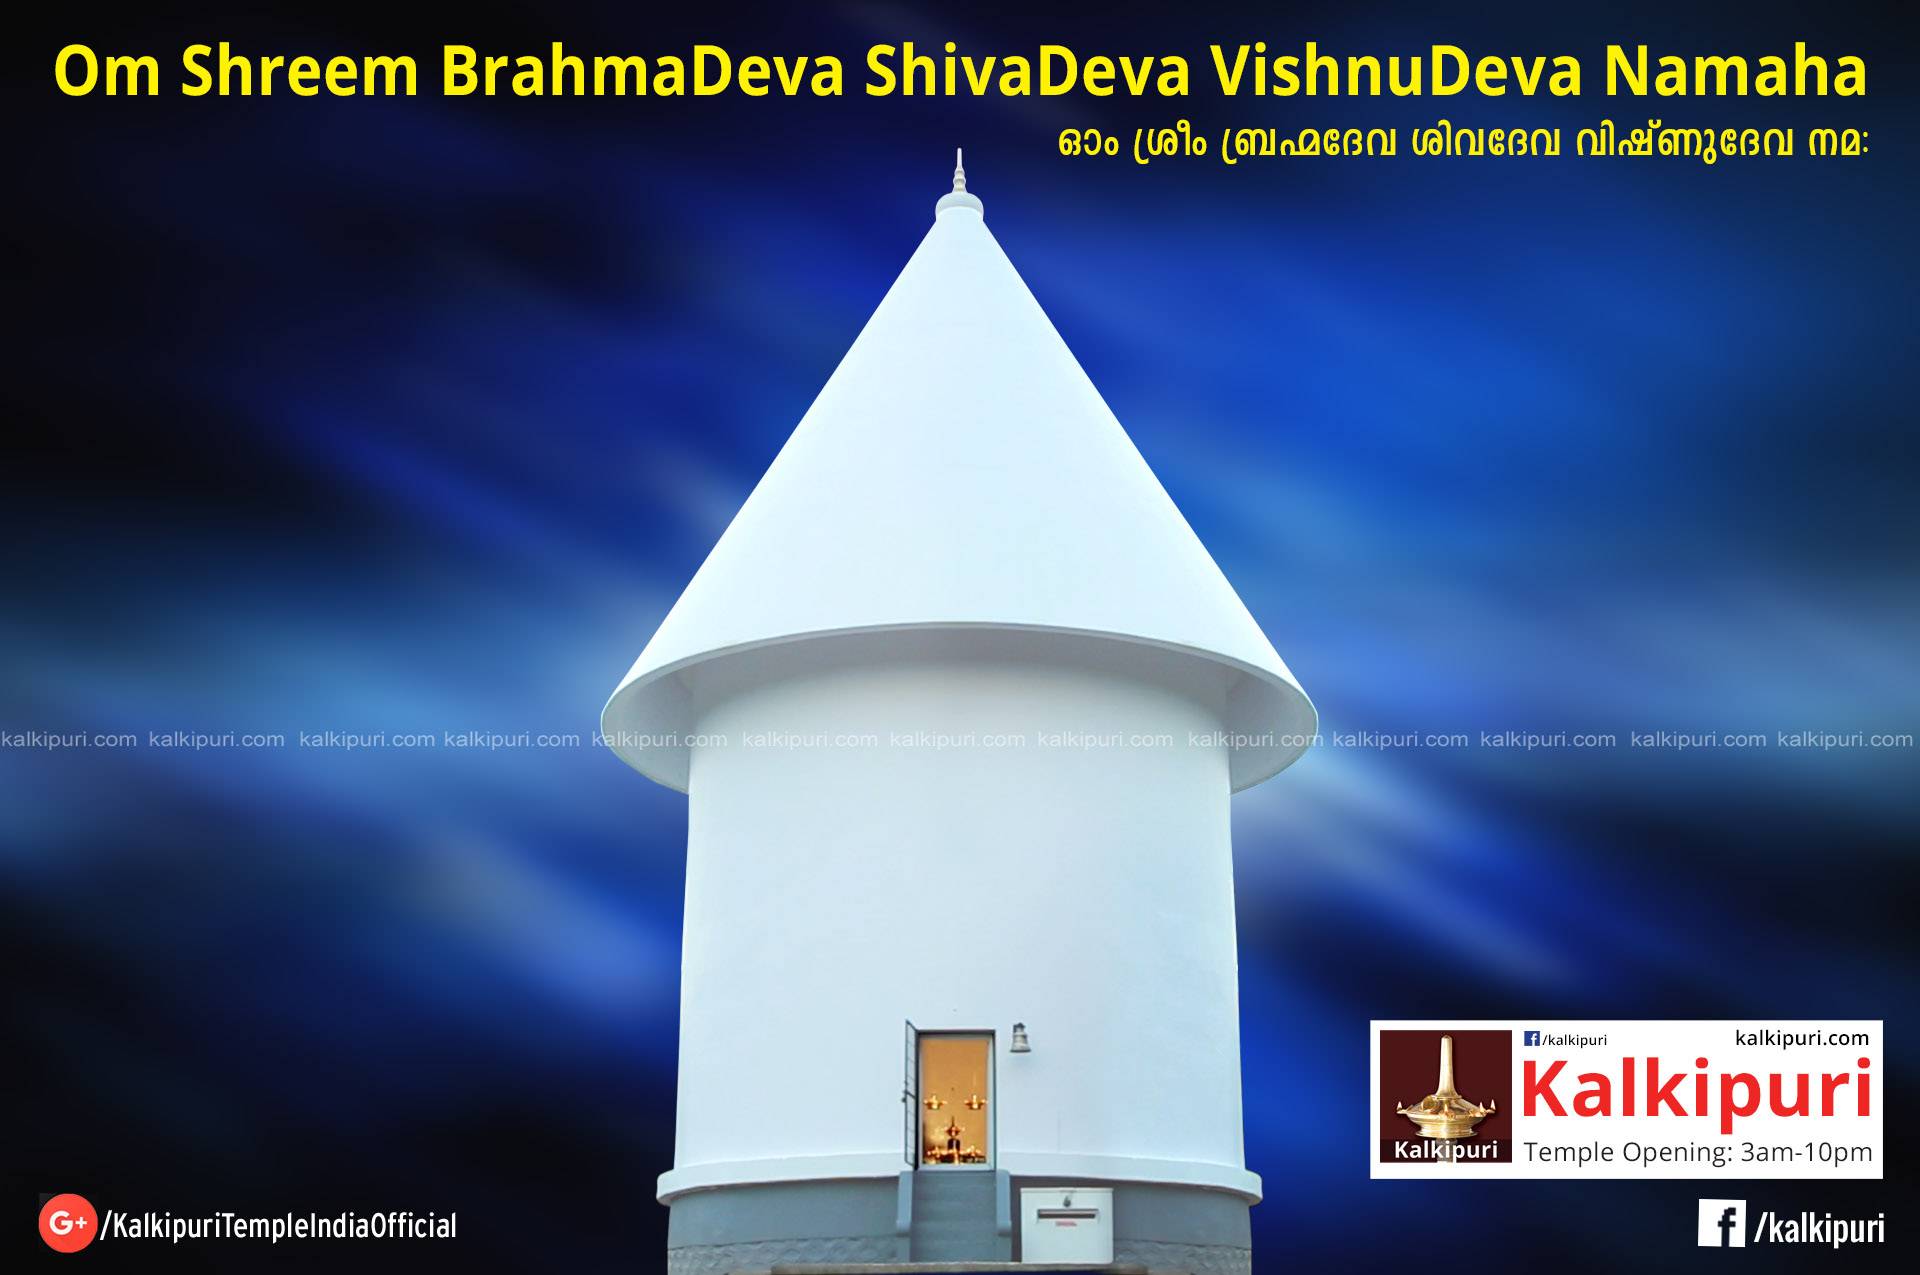 Kalkipuri Temple Mantra : Om Shreem BrahmaDeva ShivaDeva VishnuDeva Namaha